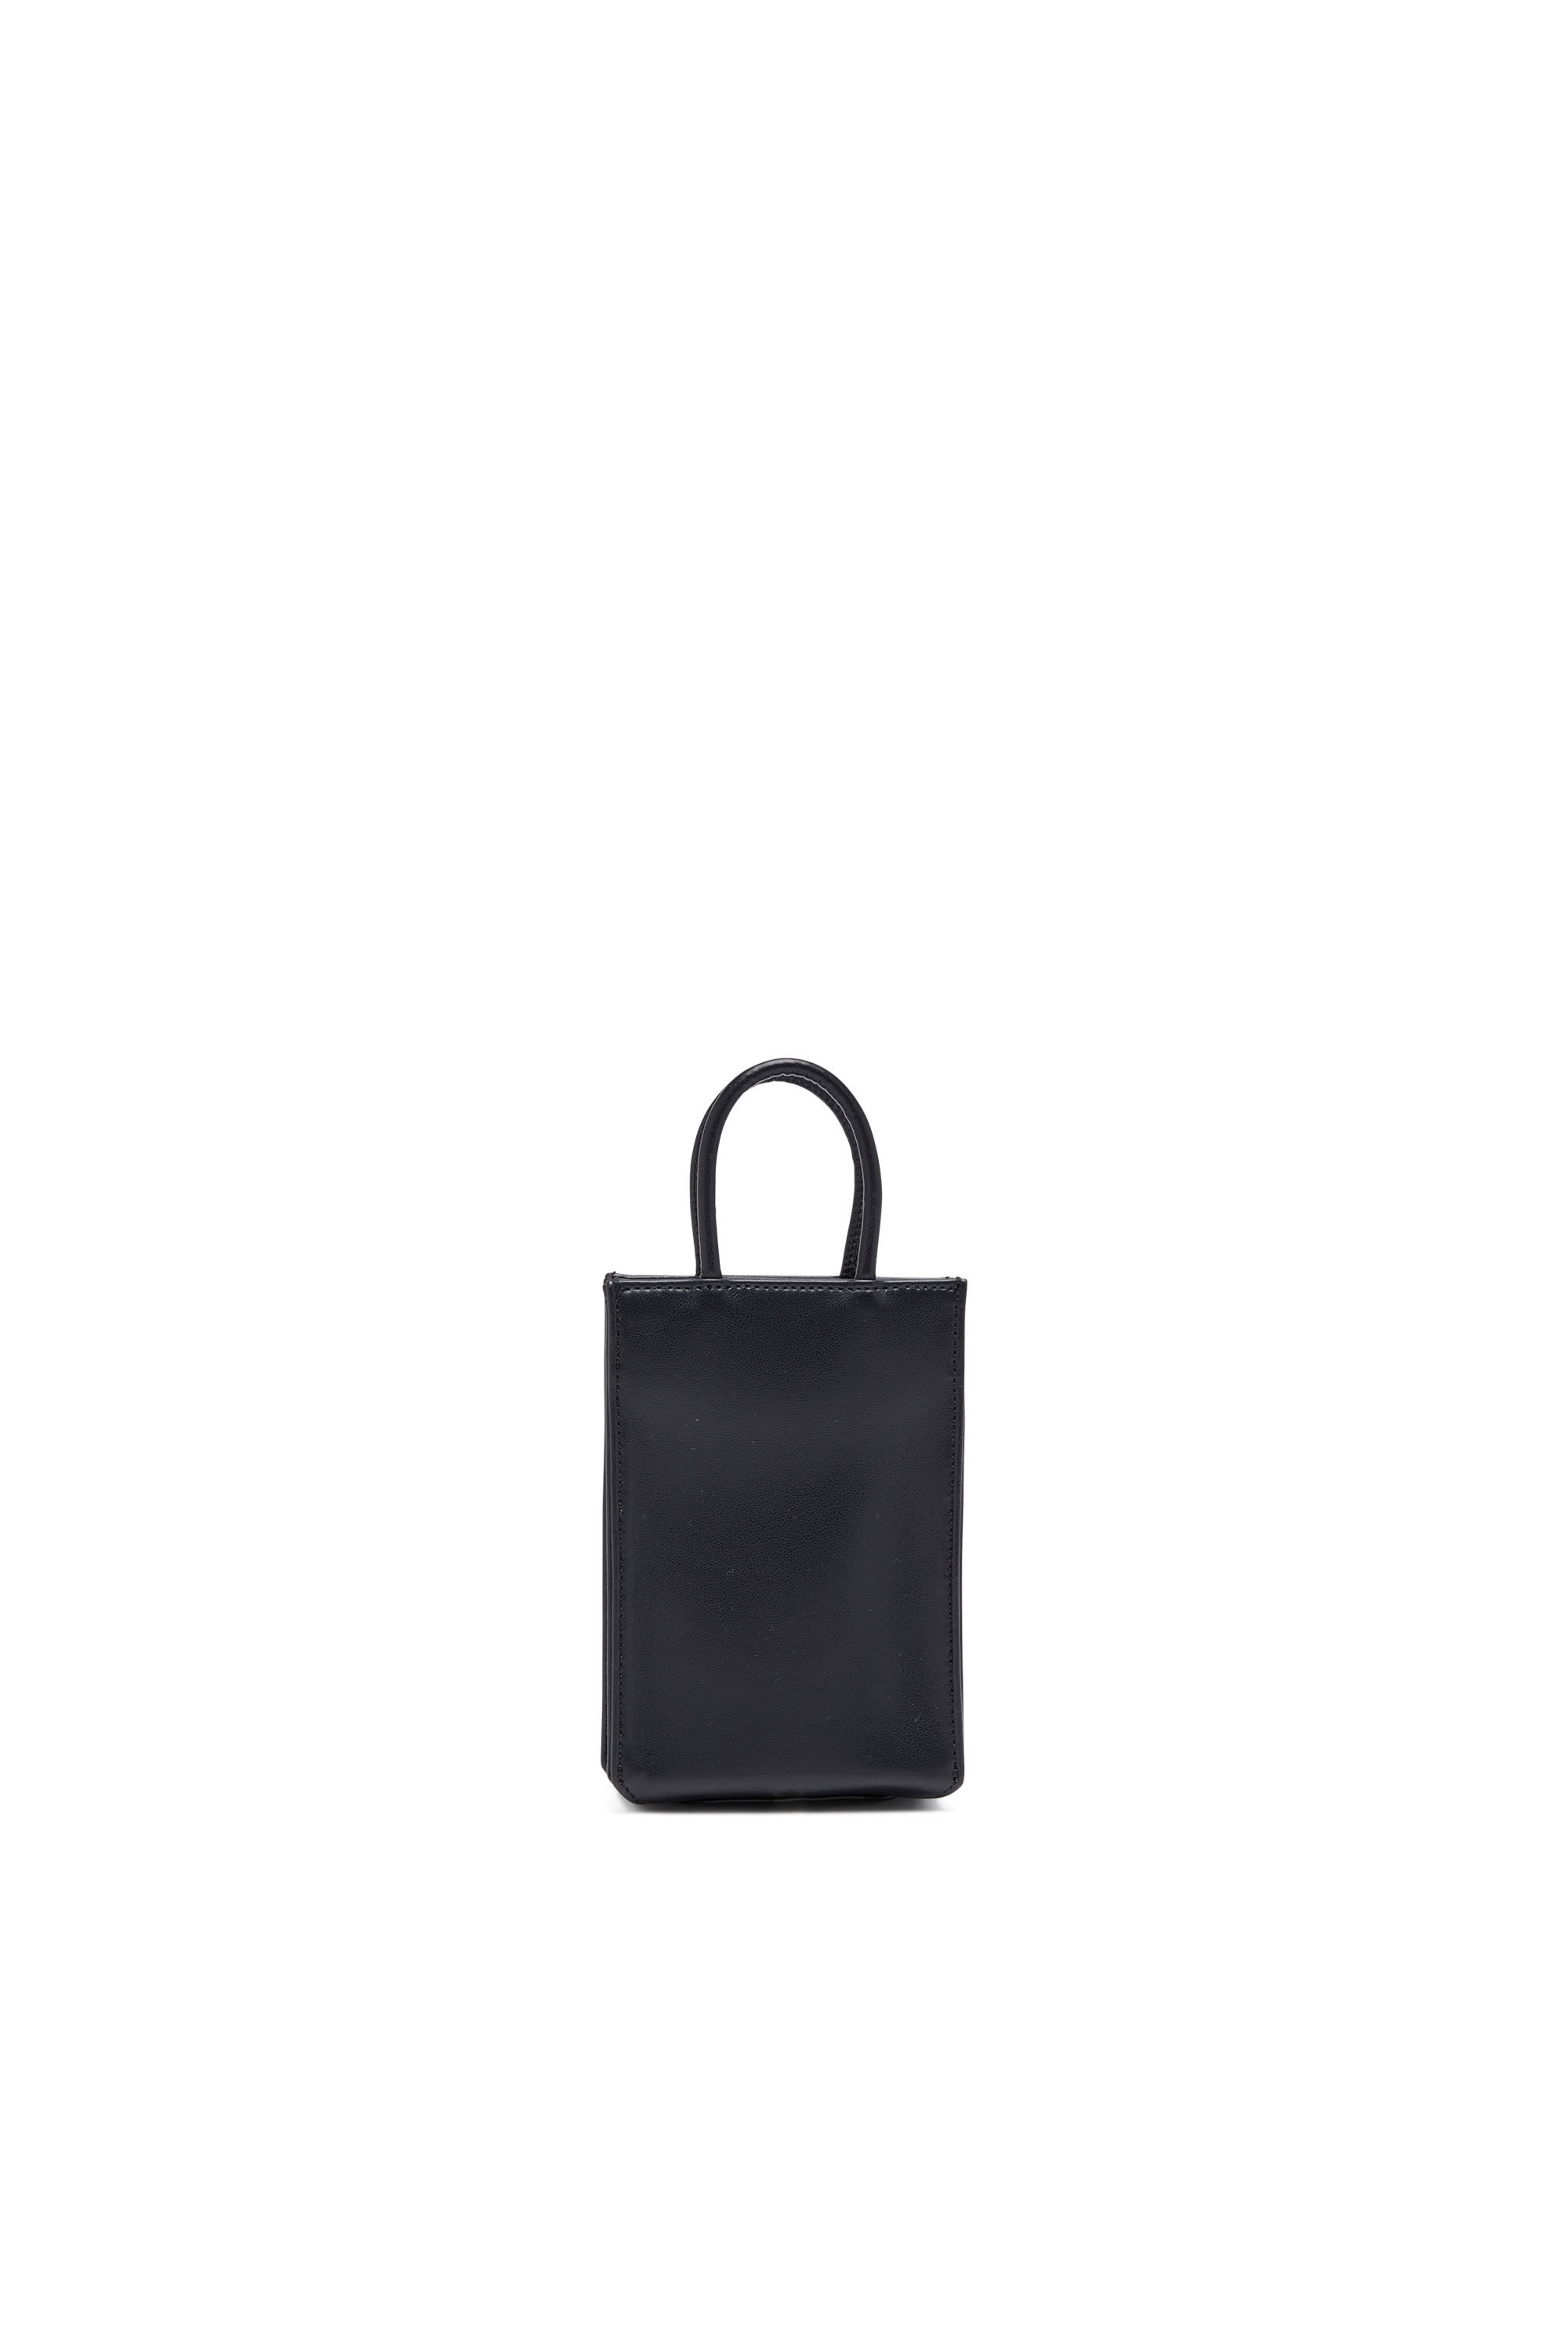 DSL 3D SHOPPER MINI X Dsl 3D Shopper Mini - Small PU tote bag with